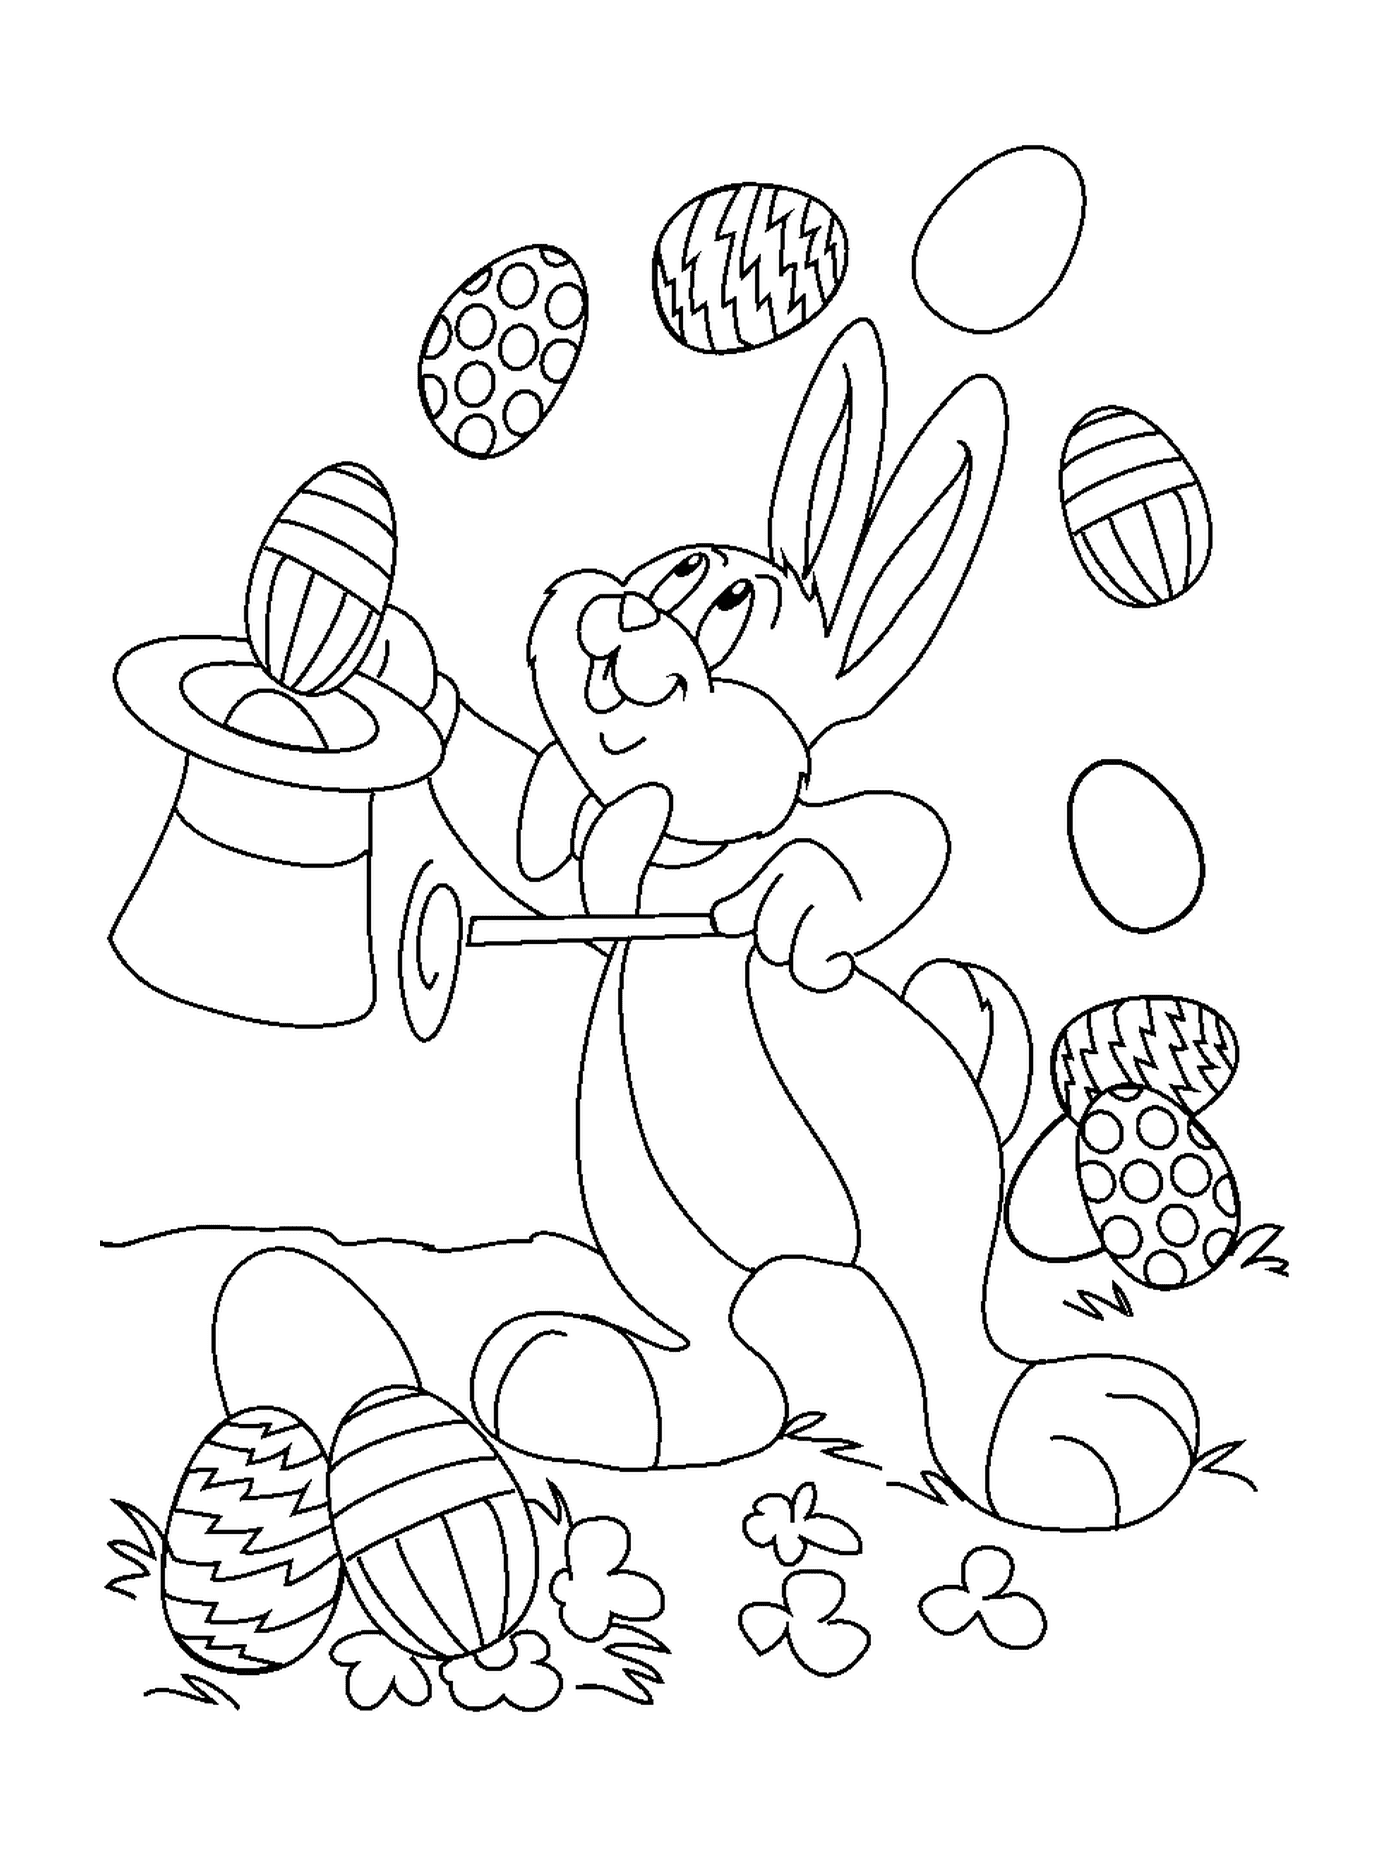  एक ईस्टर खरगोश अंडे से खेलता है 